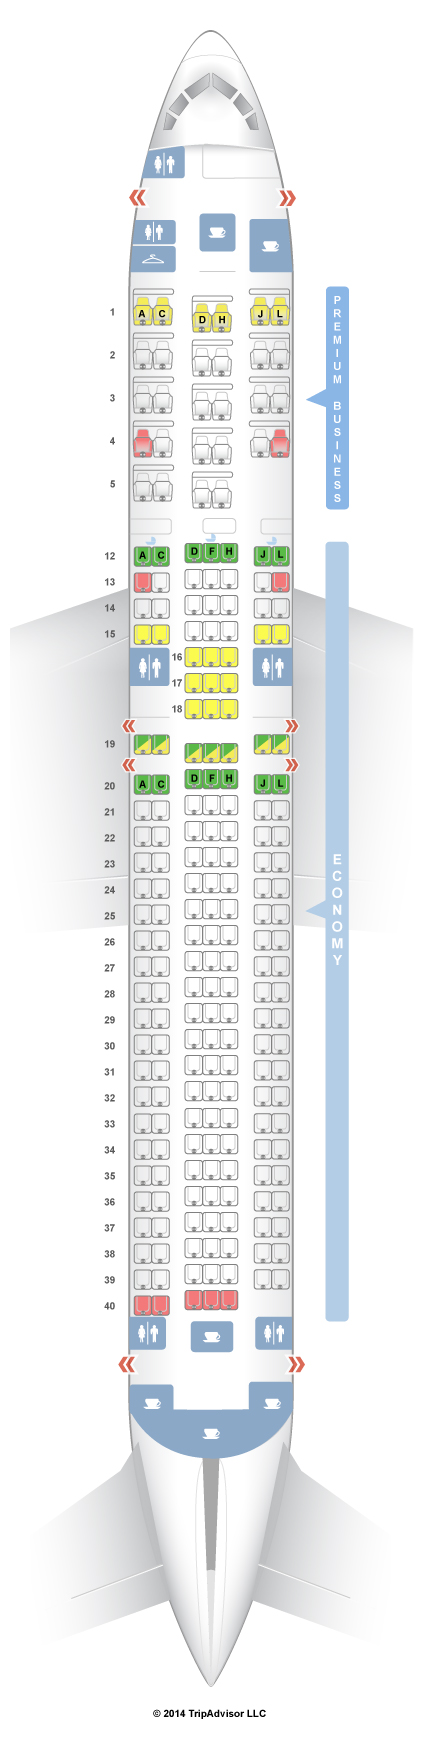 Delta Flight 2365 Seating Chart